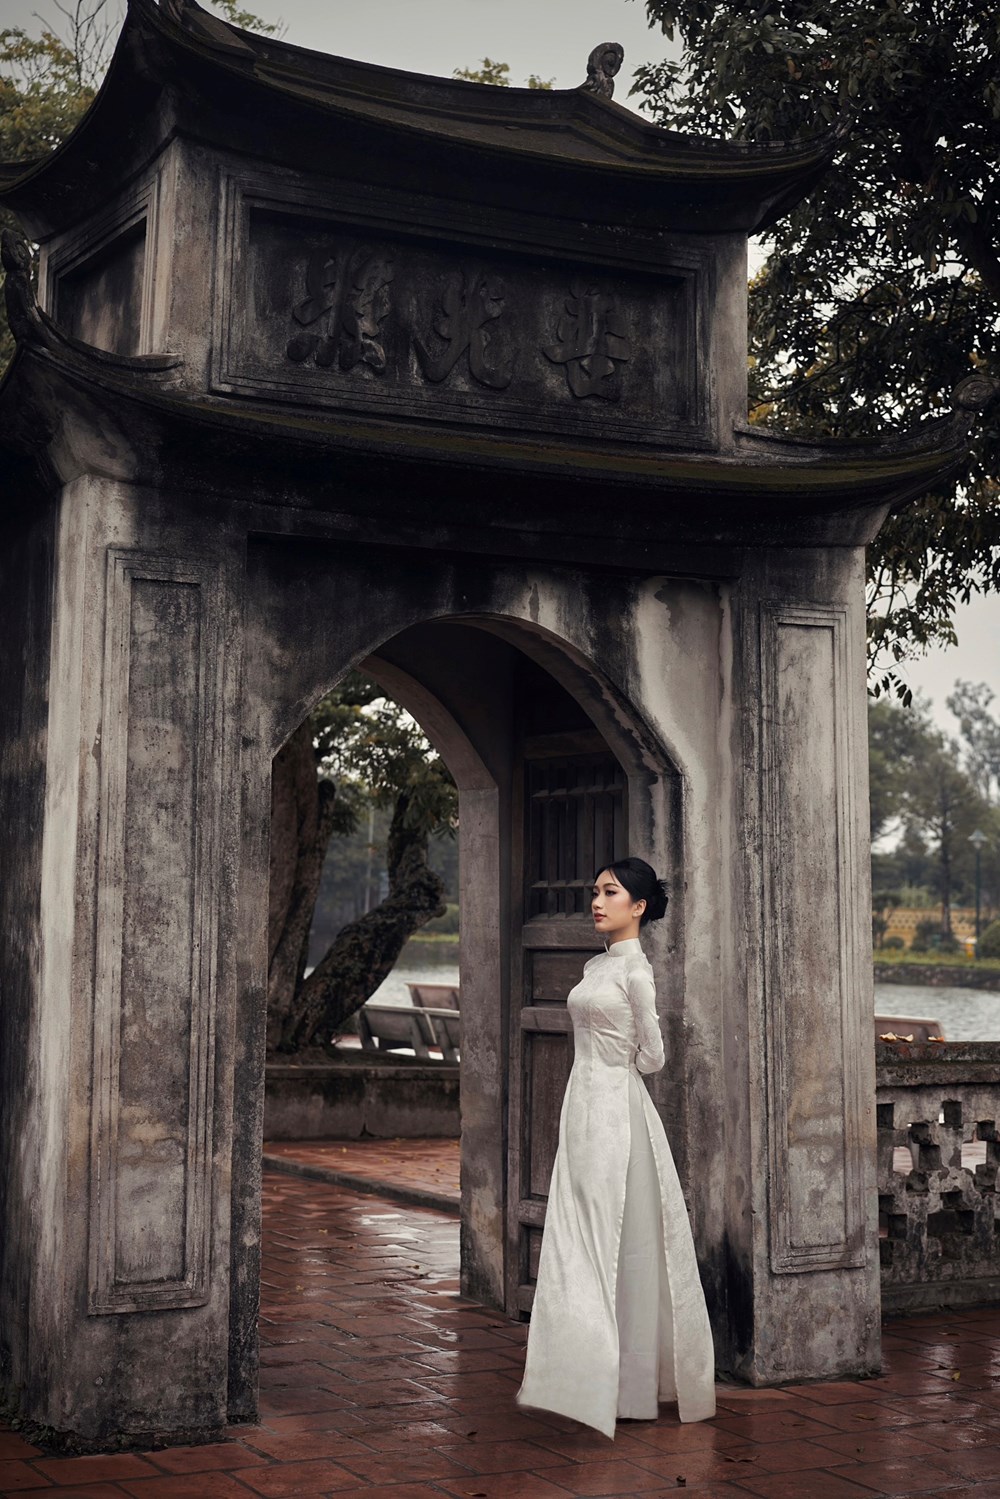 “Đại sứ Sinh viên du lịch năm 2024” đẹp nền nã trong bộ áo dài trắng tinh khôi ở chùa Keo - ảnh 5